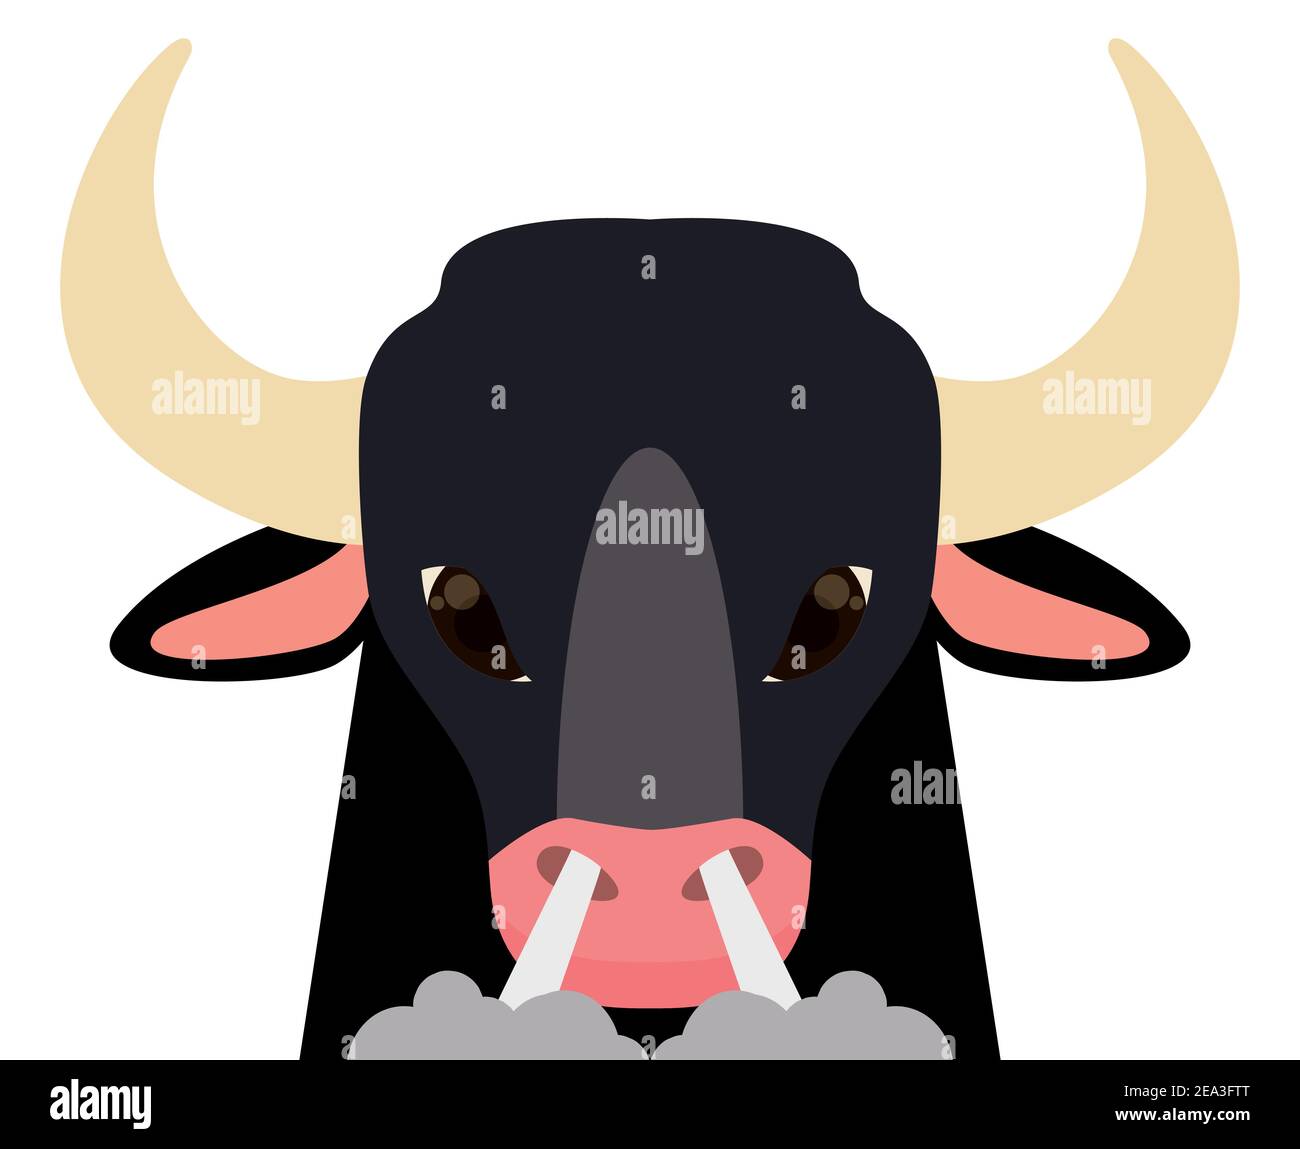 Wütender schwarzer Stier mit Ausatemrauch aus der Nase und wütendem Look, isoliert im flachen Stil. Stock Vektor